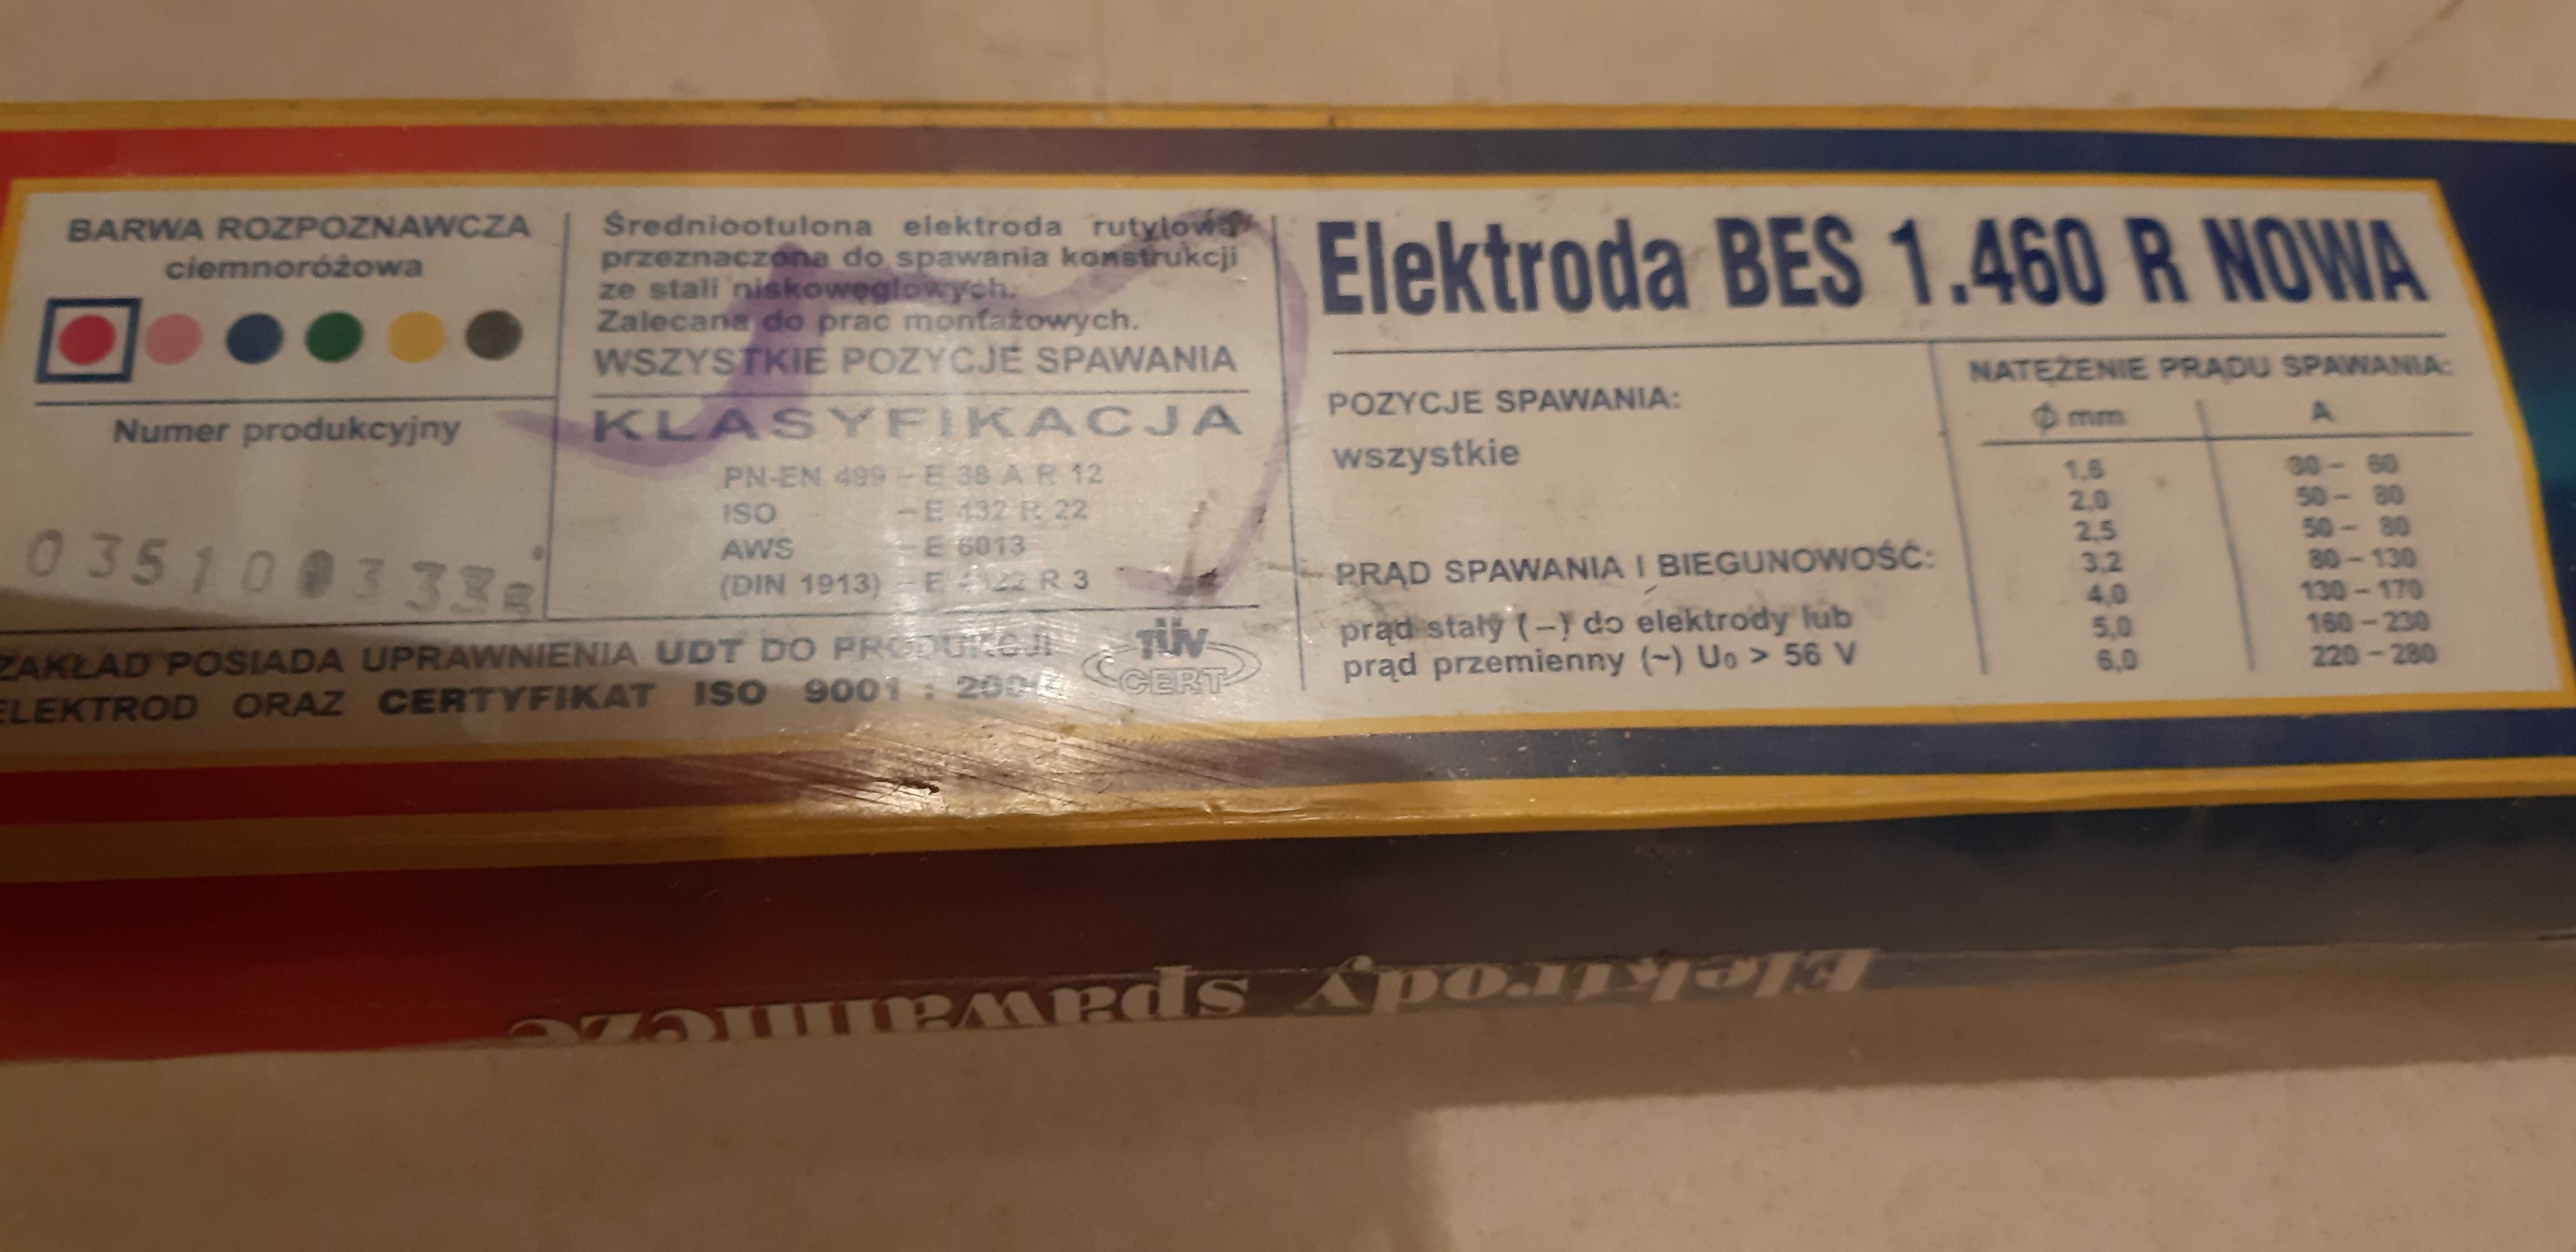 Elektroda BES 1.460 R NOWA 4mm.